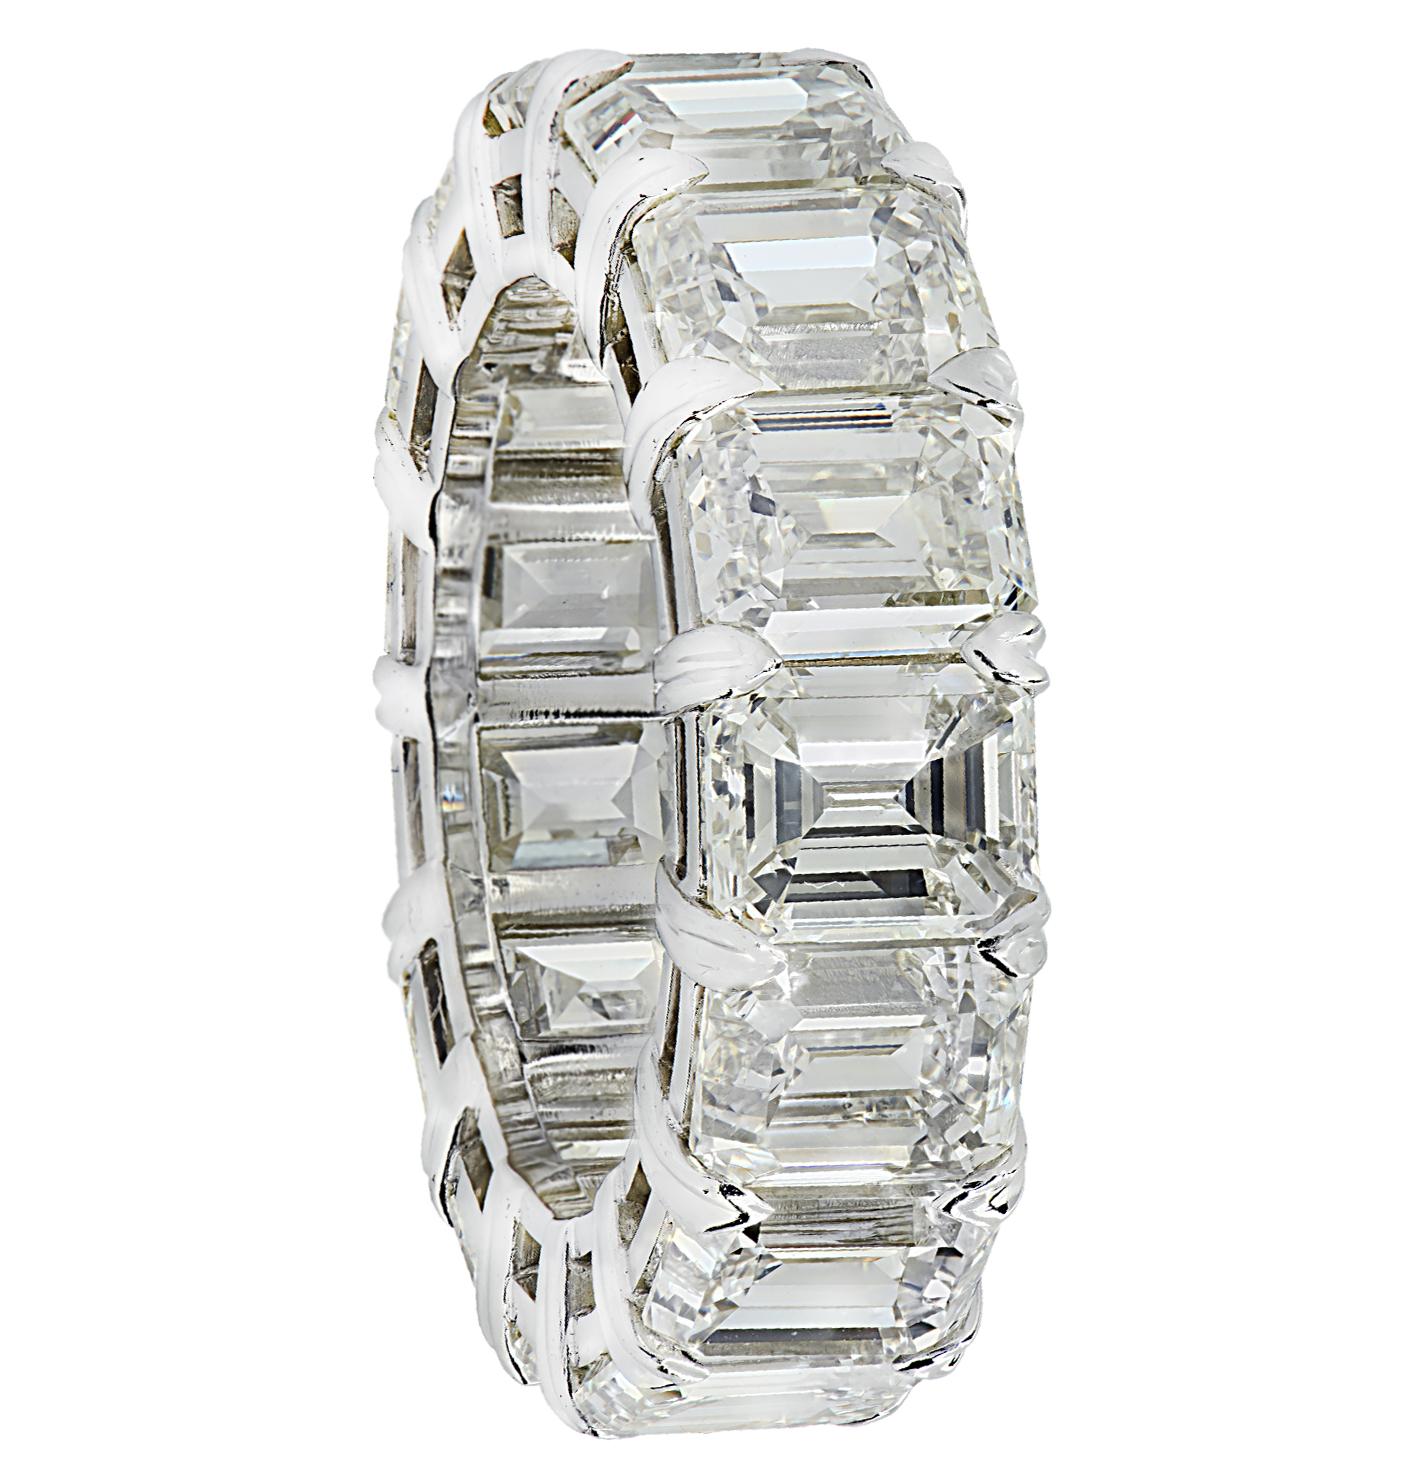 Exquise bague d'éternité Vivid Diamonds en diamant taille émeraude réalisée en platine, mettant en valeur 15 superbes diamants taille émeraude pesant 15.2 carats au total, couleur J, pureté VVS1-VS. Chaque diamant a été soigneusement sélectionné,